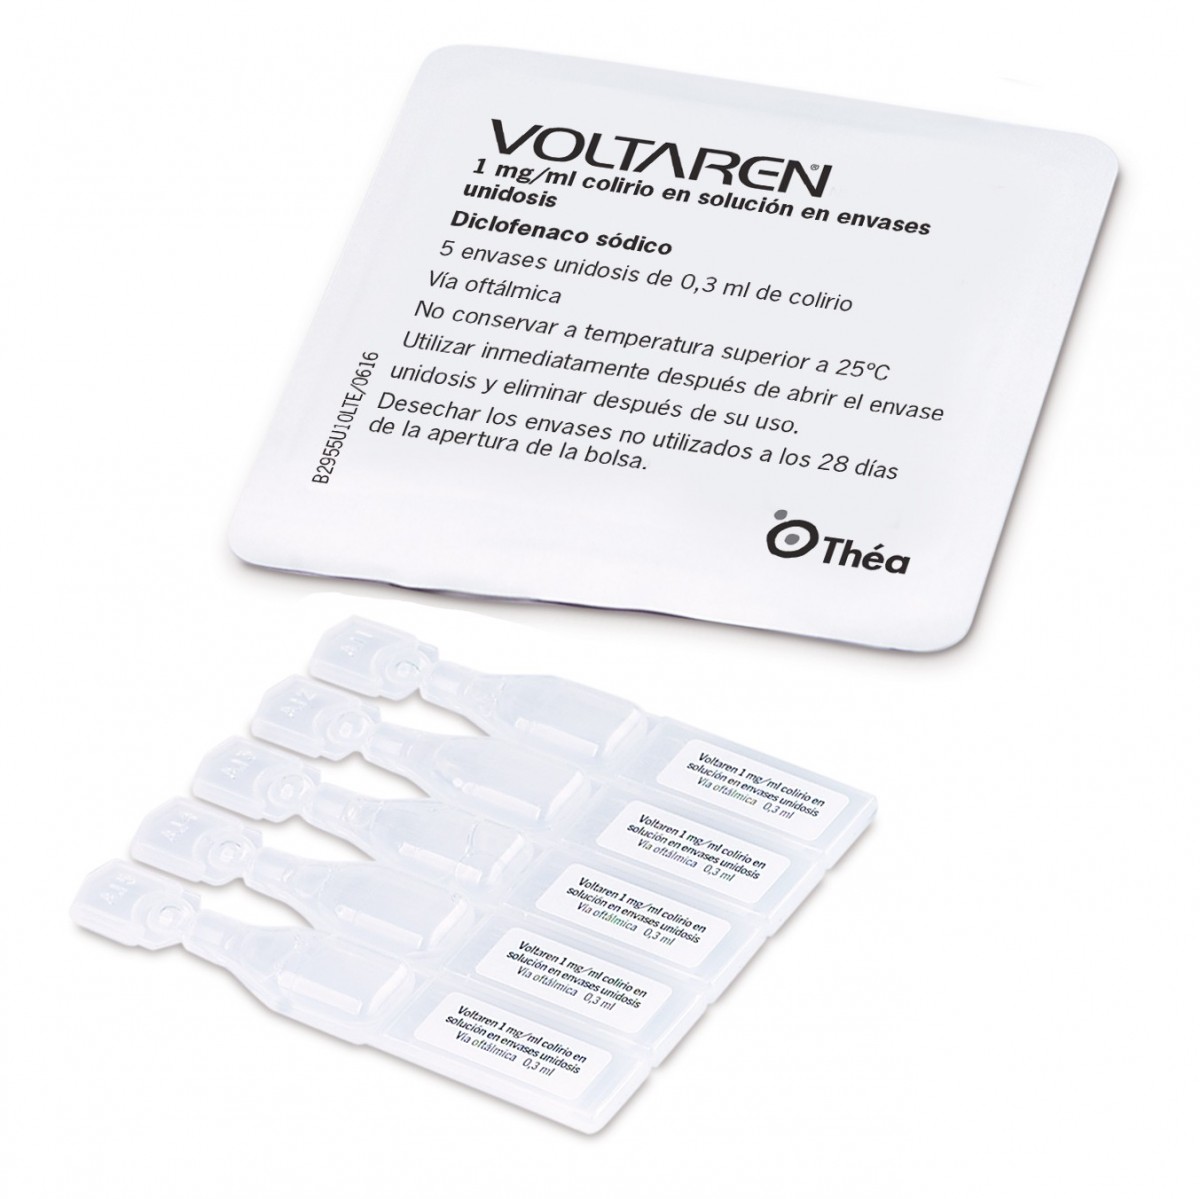 VOLTAREN 1 mg/ml COLIRIO EN SOLUCION EN ENVASES UNIDOSIS, 40 envases unidosis de 0,3 ml fotografía de la forma farmacéutica.